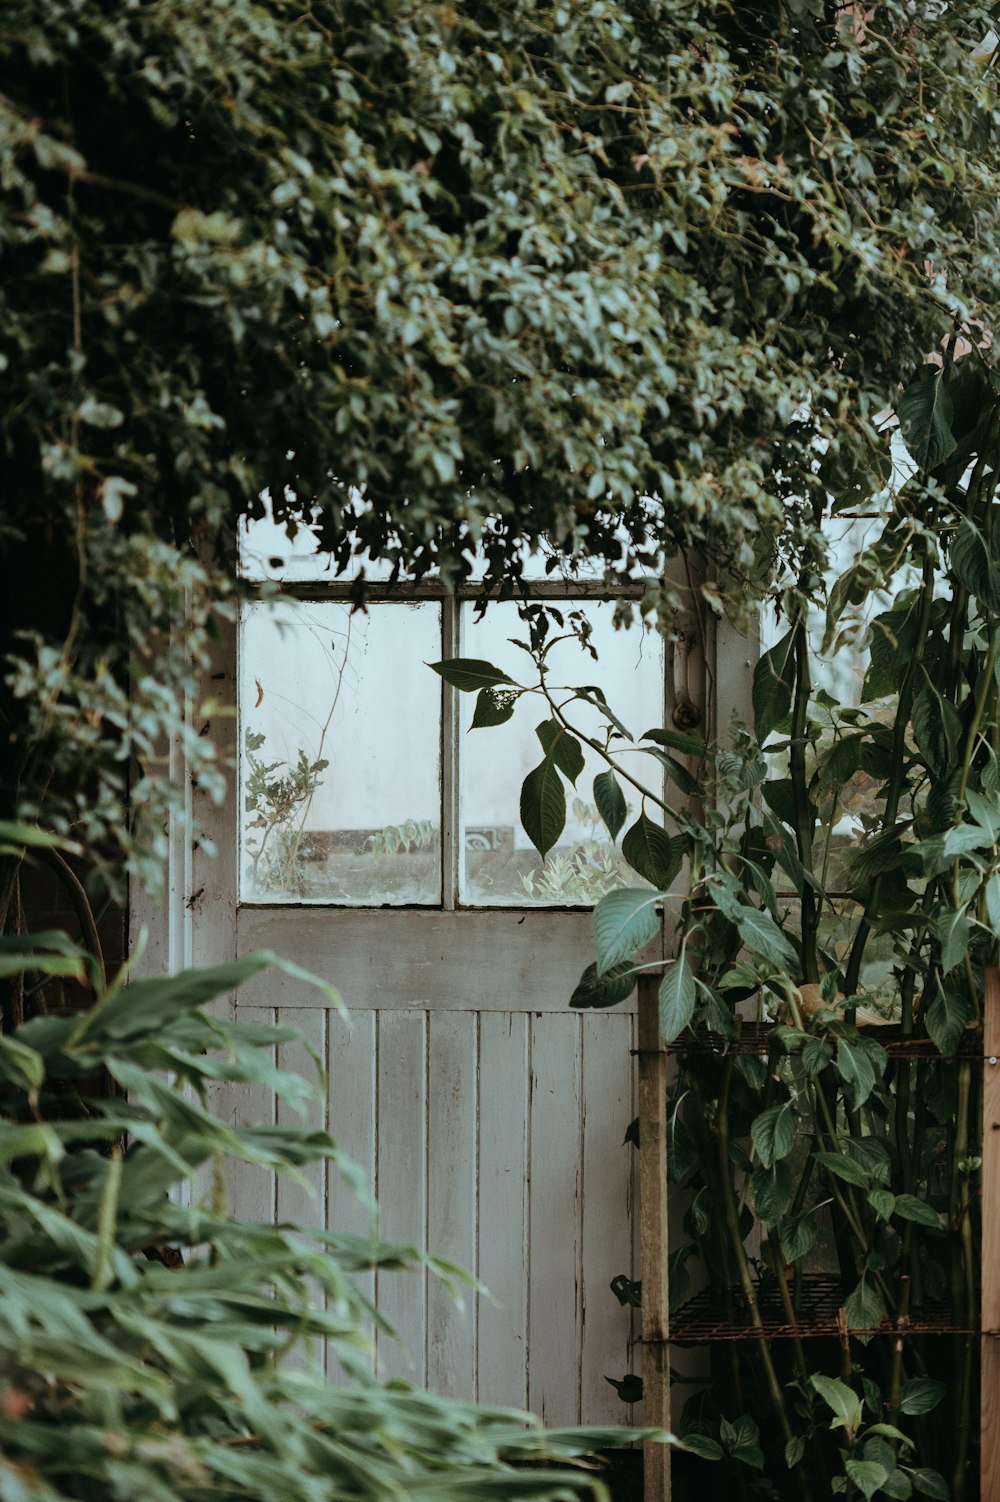 Puerta cerrada de panel de vidrio con marco blanco rodeada de plantas